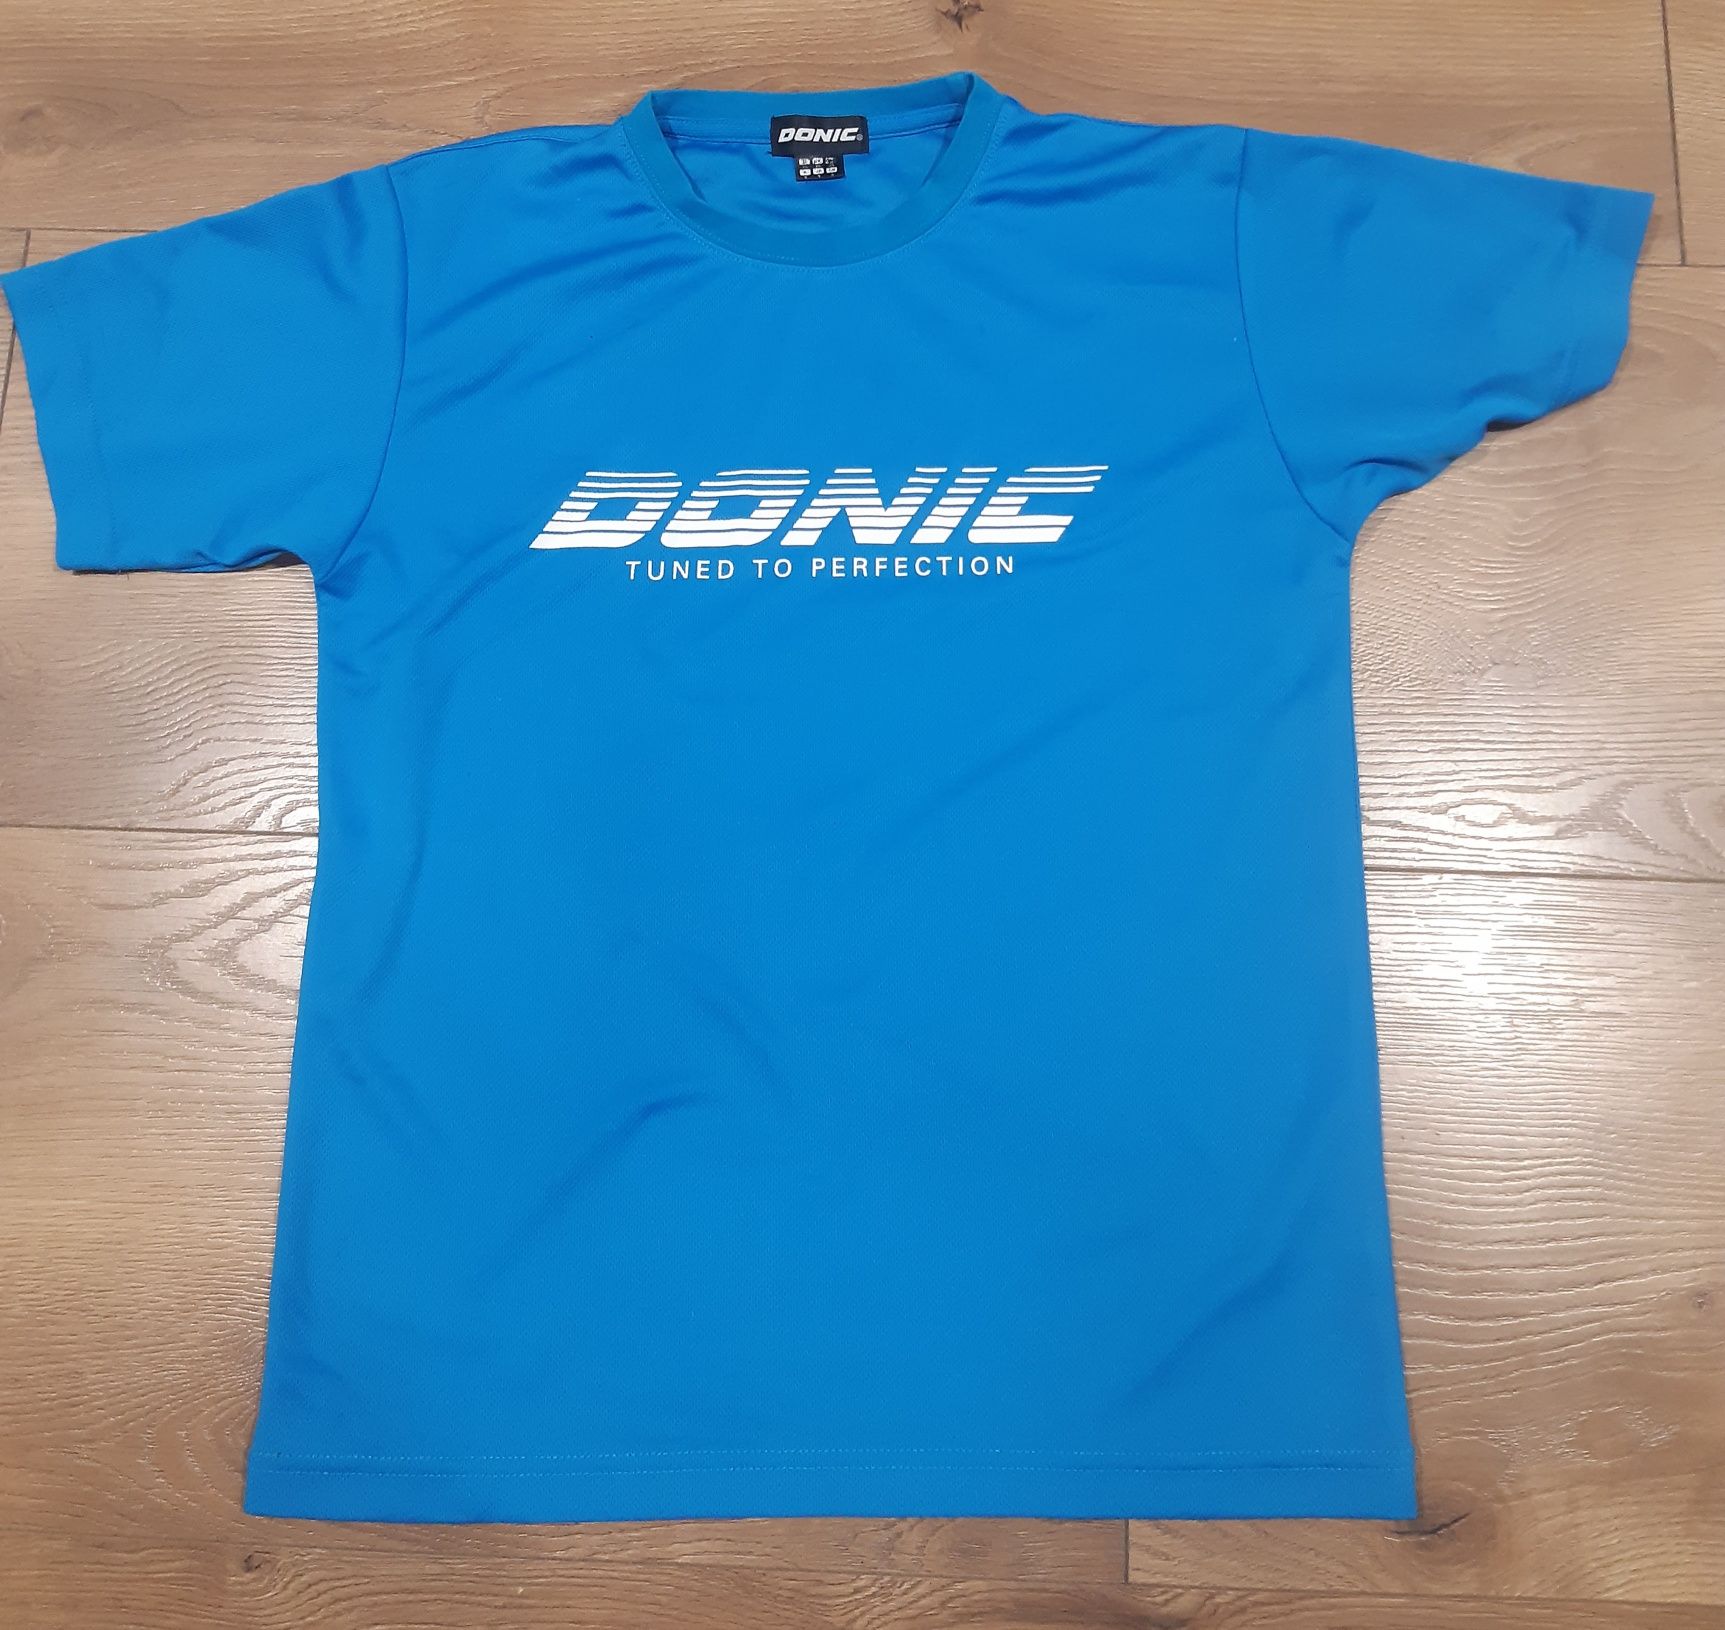 Koszulka sportowa Donic, tenis stołowy, ping-pong, rozmiar S.